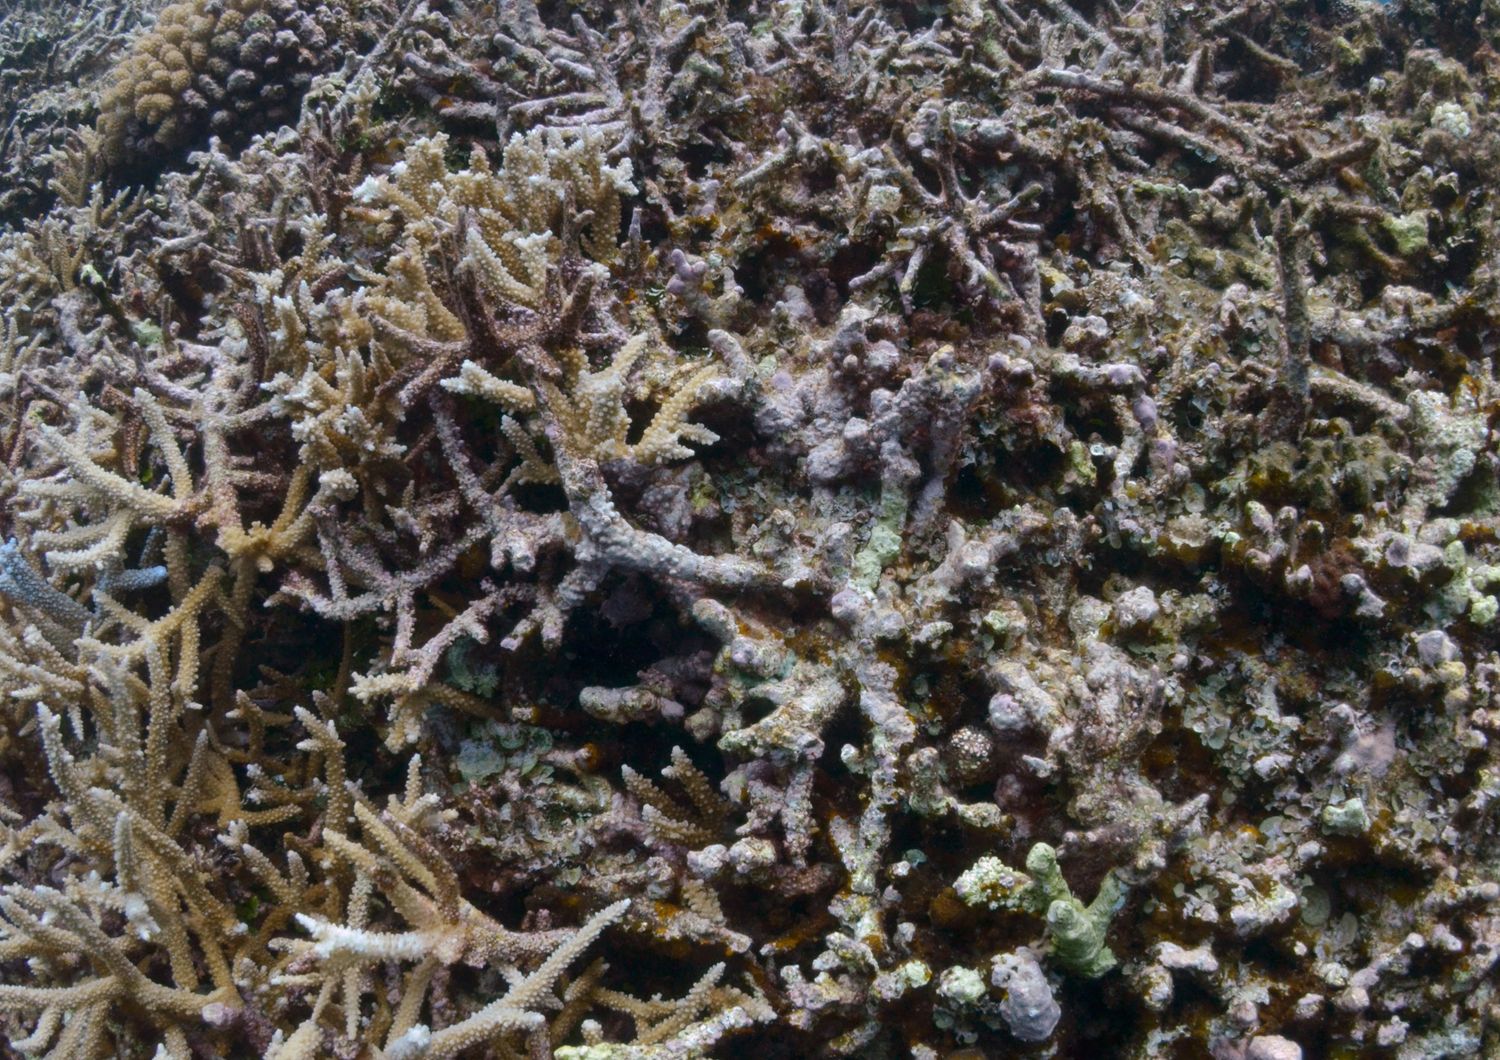 Un sub esamina lo sbiancamento dei coralli &nbsp;